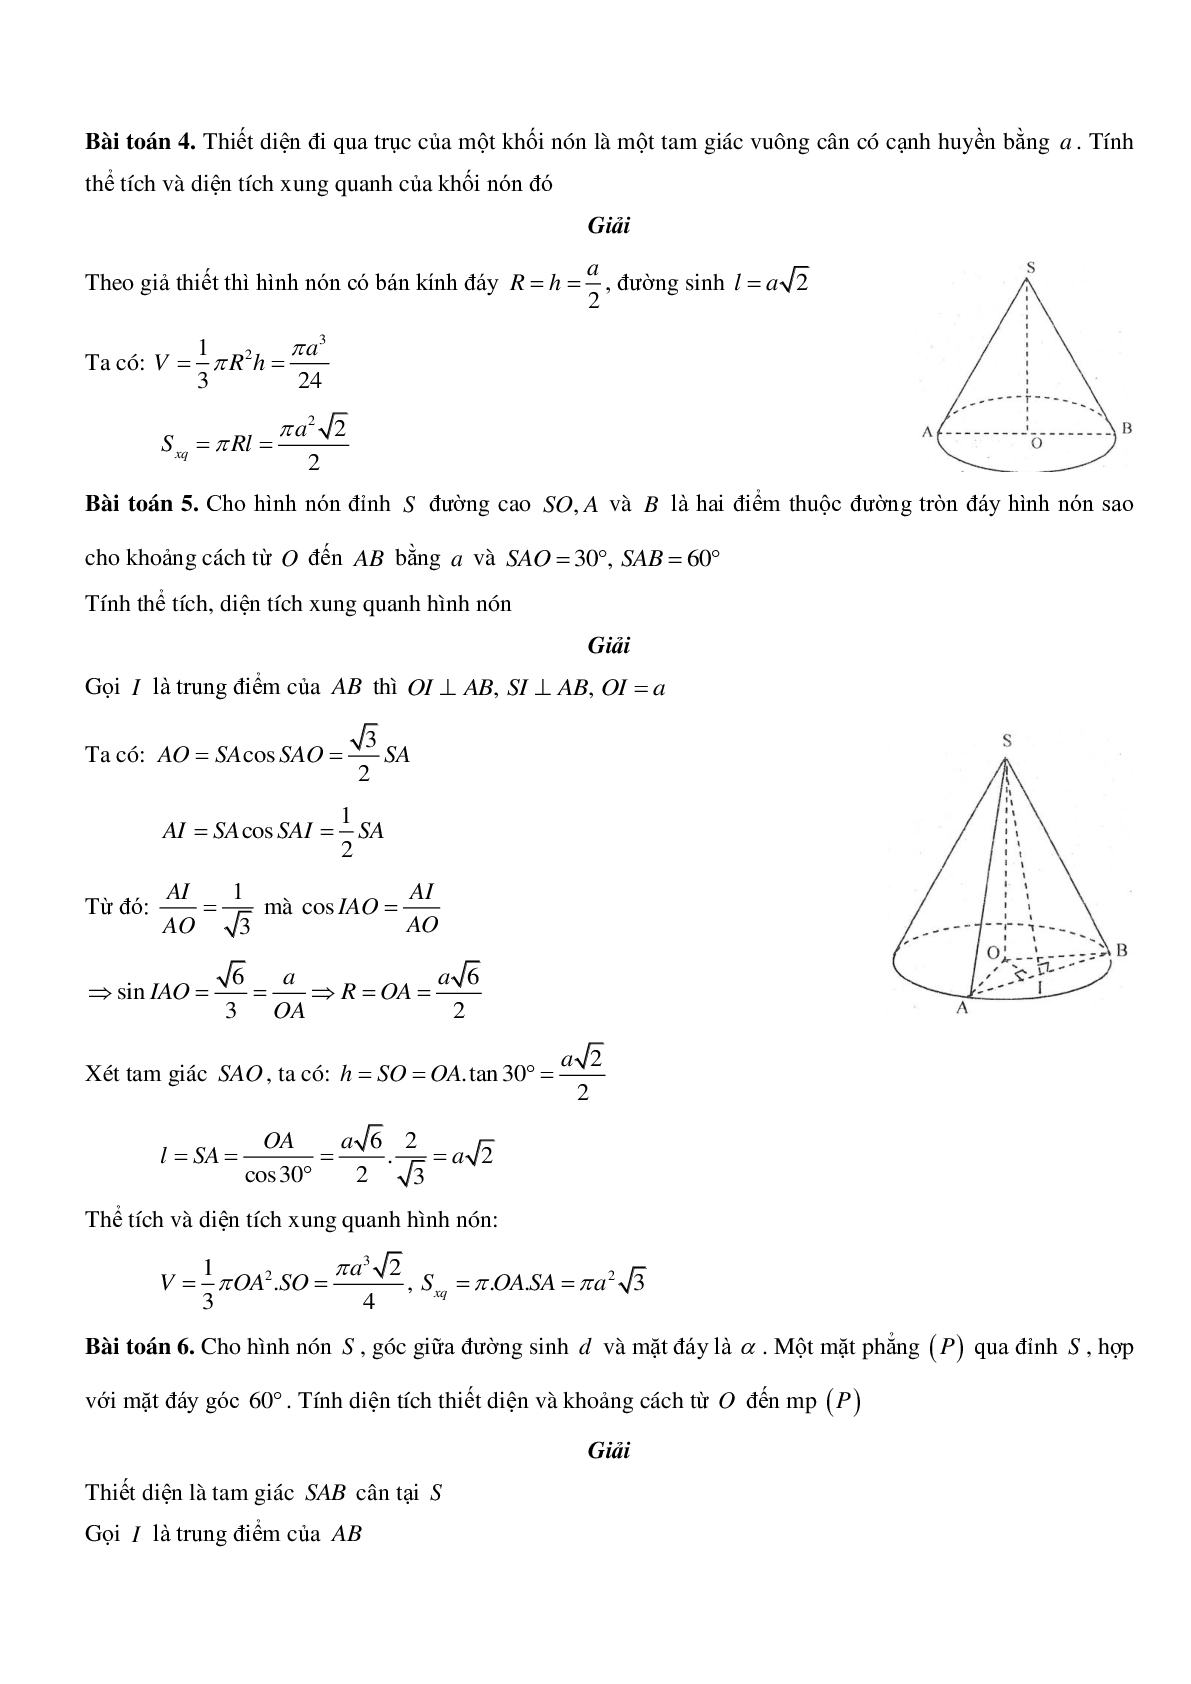 Mặt nón - Hình nón - Khối nón - Ôn thi THPT QG môn toán (trang 3)